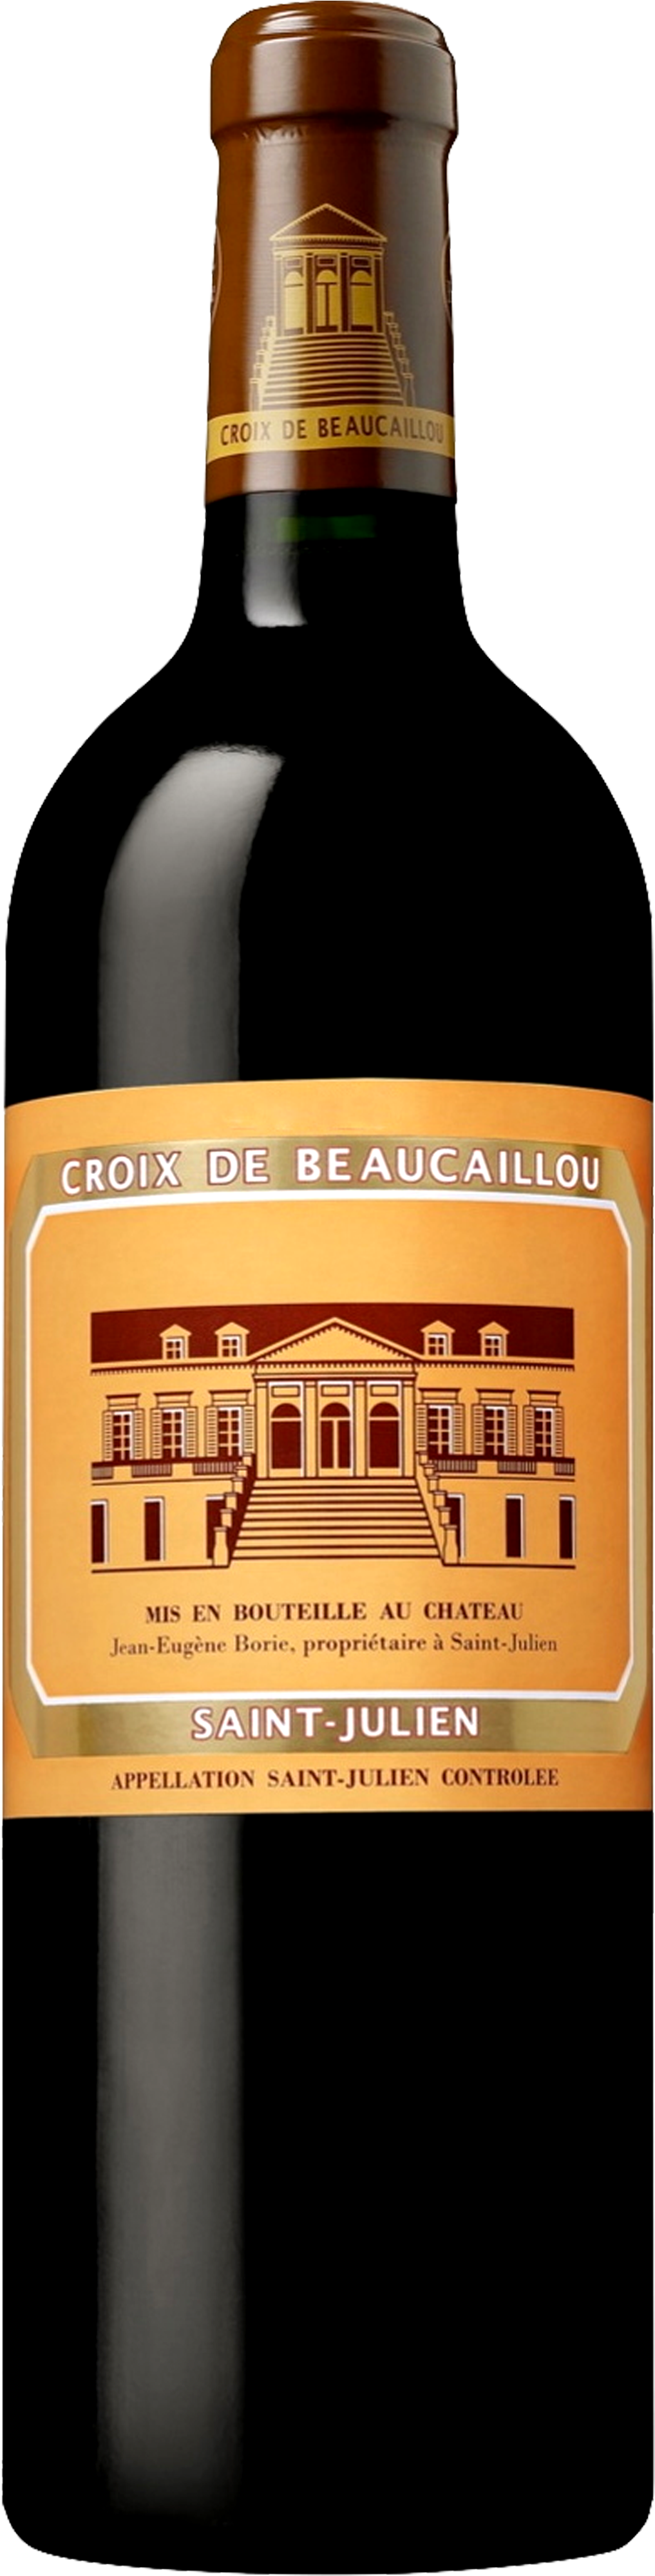 Image Of Product La Croix De Beaucaillou, St Julien - Château Ducru Beaucaillou Croix De Beaucaillou (1016x4065), Png Download